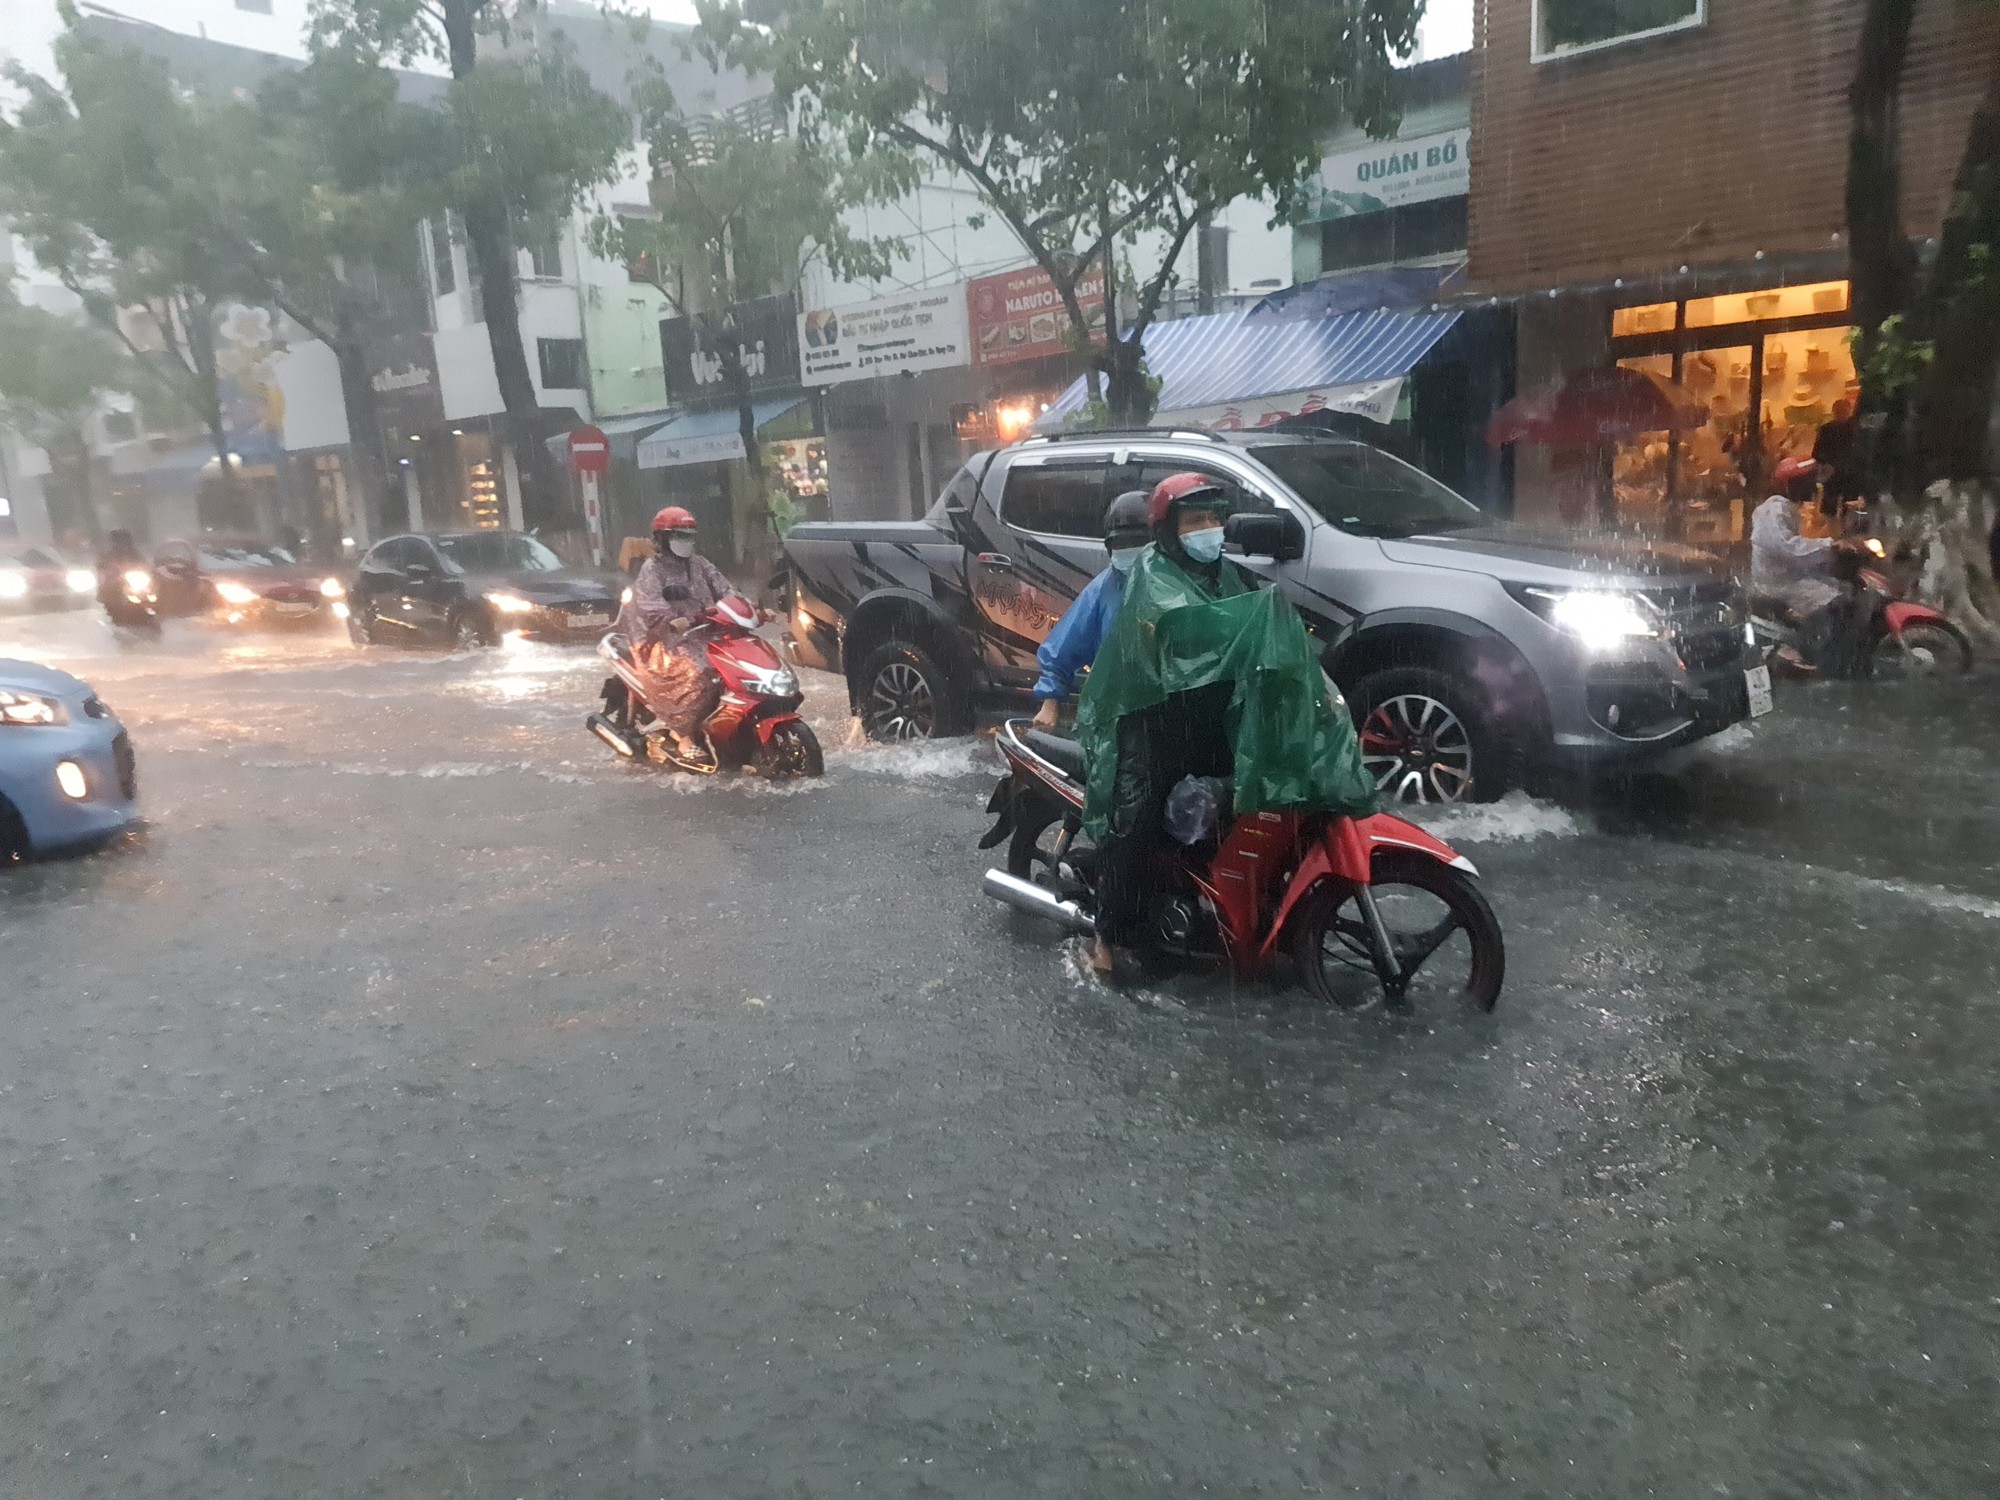 Bão số 5 gây mưa lớn, đường phố Đà Nẵng ngập, 2 tàu cá Khánh Hòa bị chìm  - Ảnh 10.